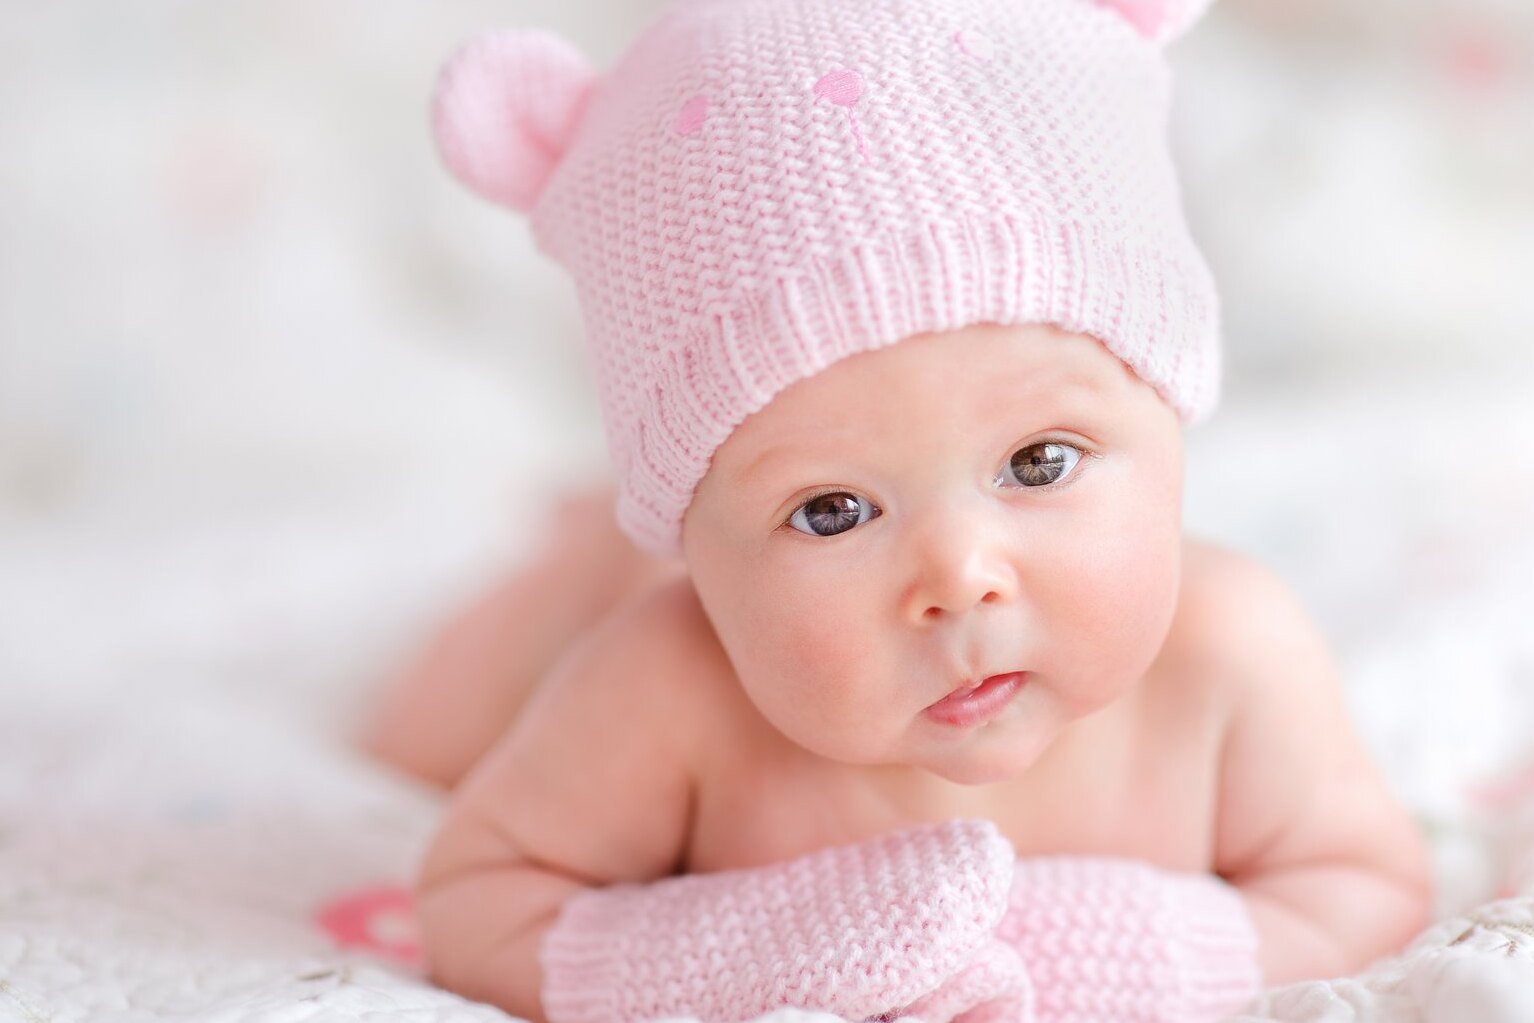 Редкая медицинская патология: в Израиле родилась девочка с эмбрионом в животе